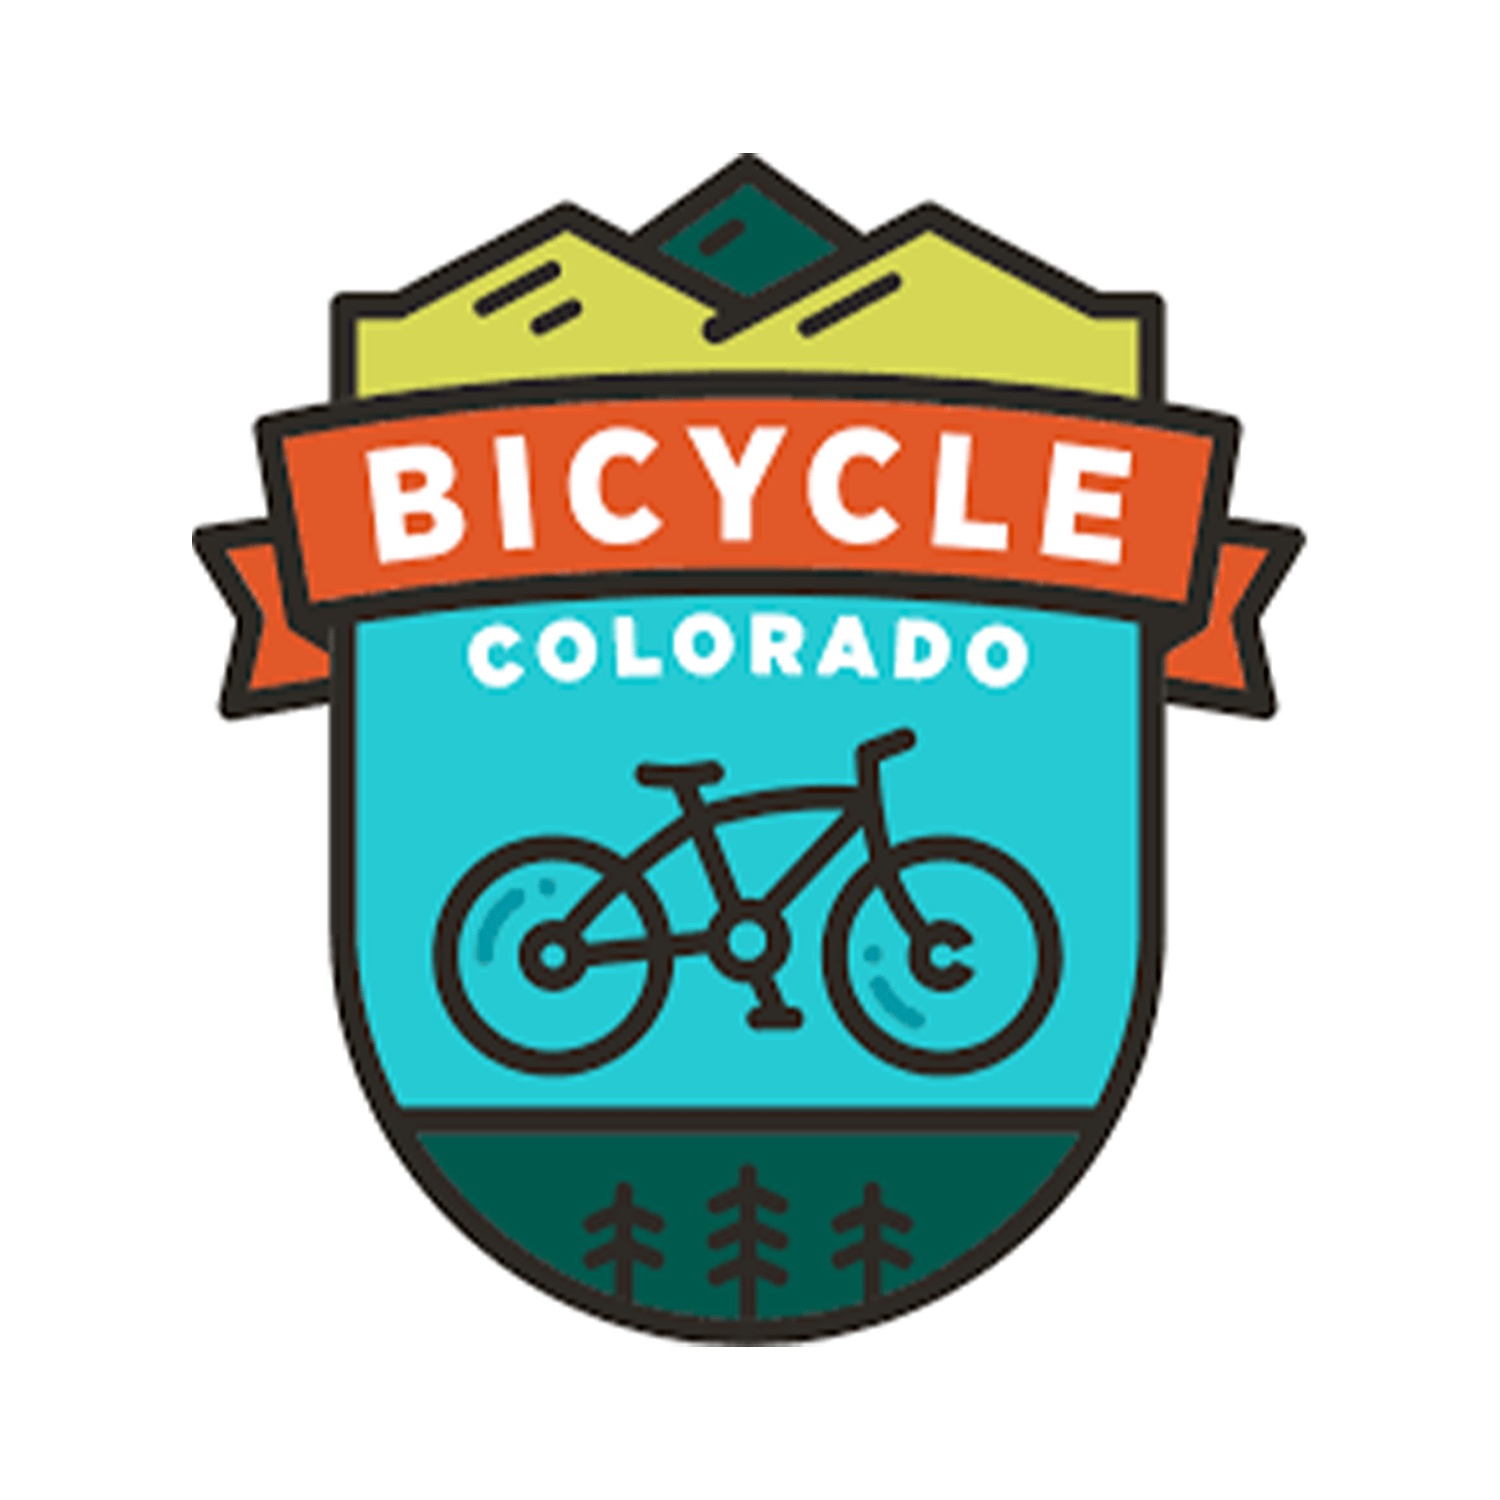 Bicycle Colorado - Bicycle ColoraDo